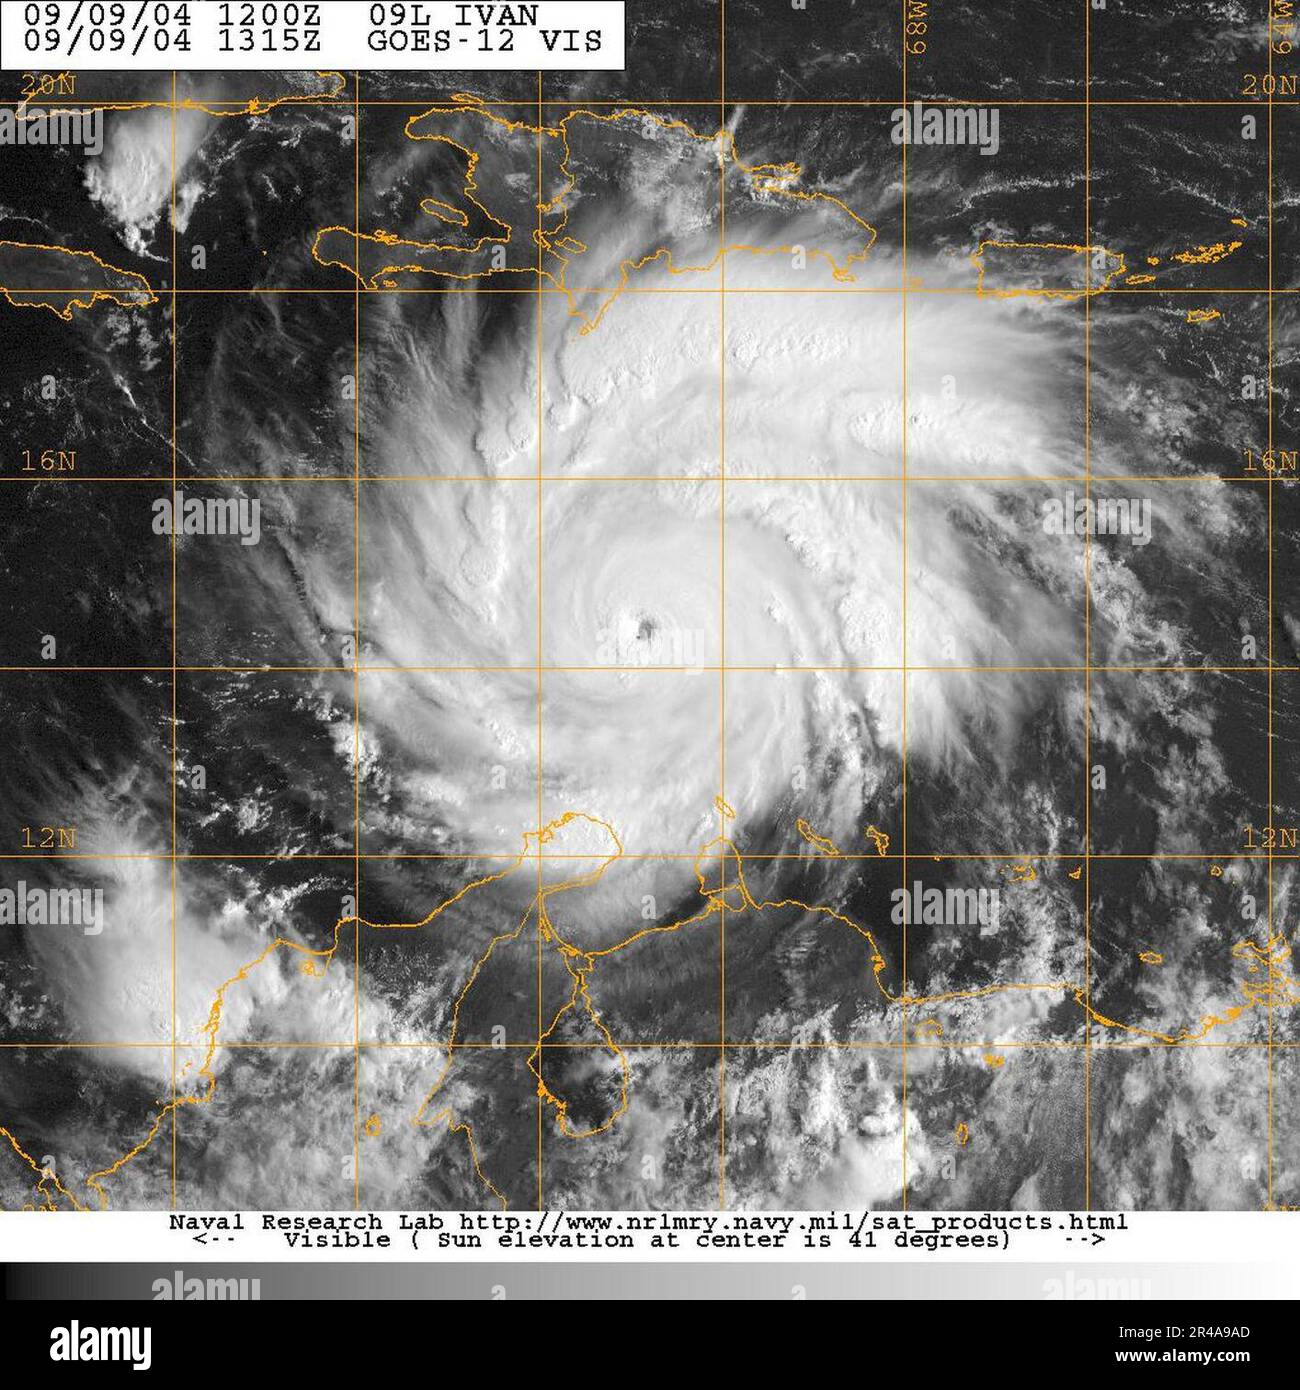 Imagen satelital de la Marina de LOS ESTADOS UNIDOS tomada del satélite GOES-12 del huracán Iván aproximadamente a las 0815 EST Foto de stock